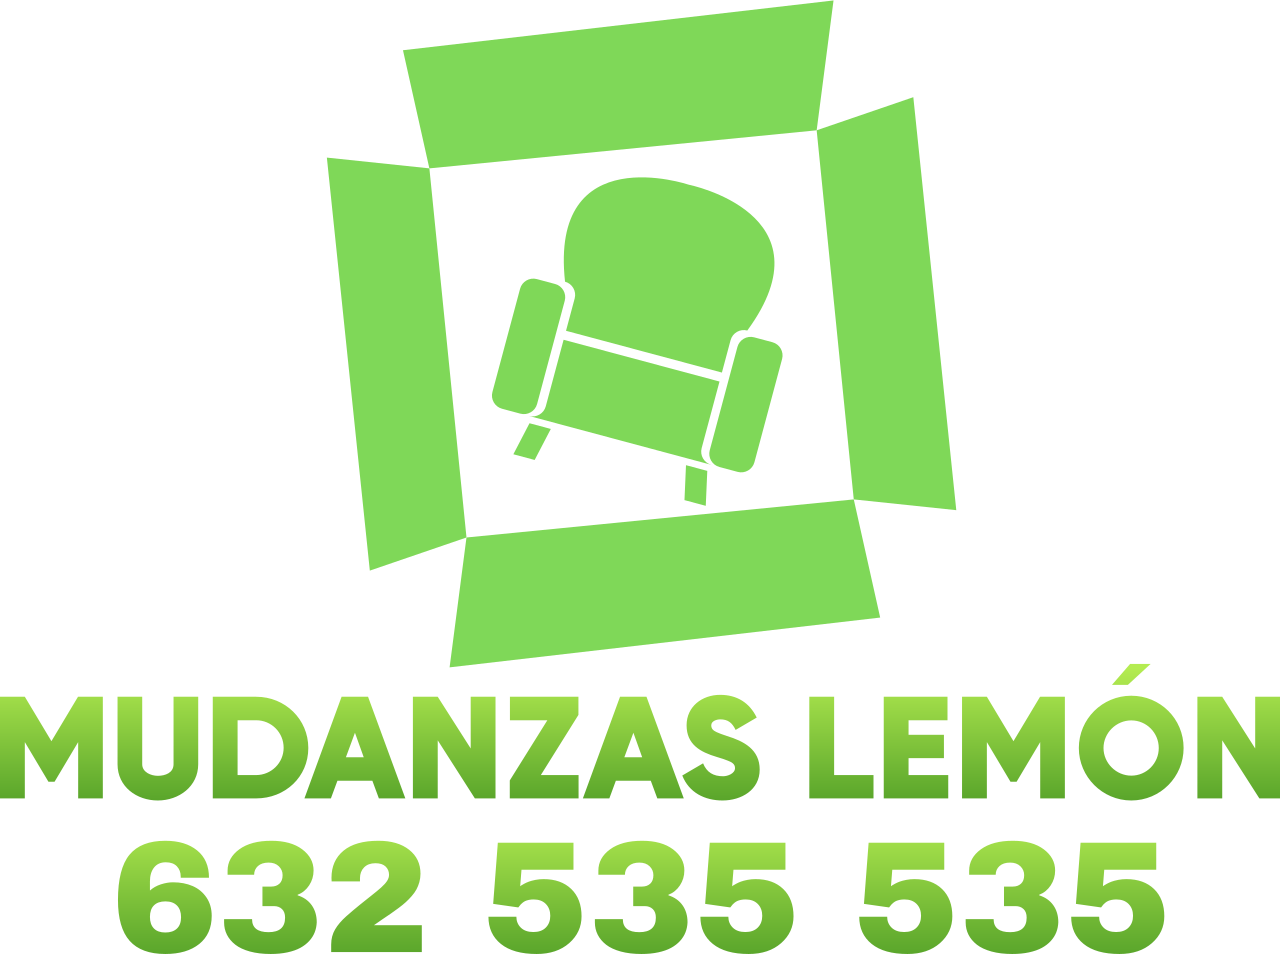 MUDANZAS LEMÓN's logo